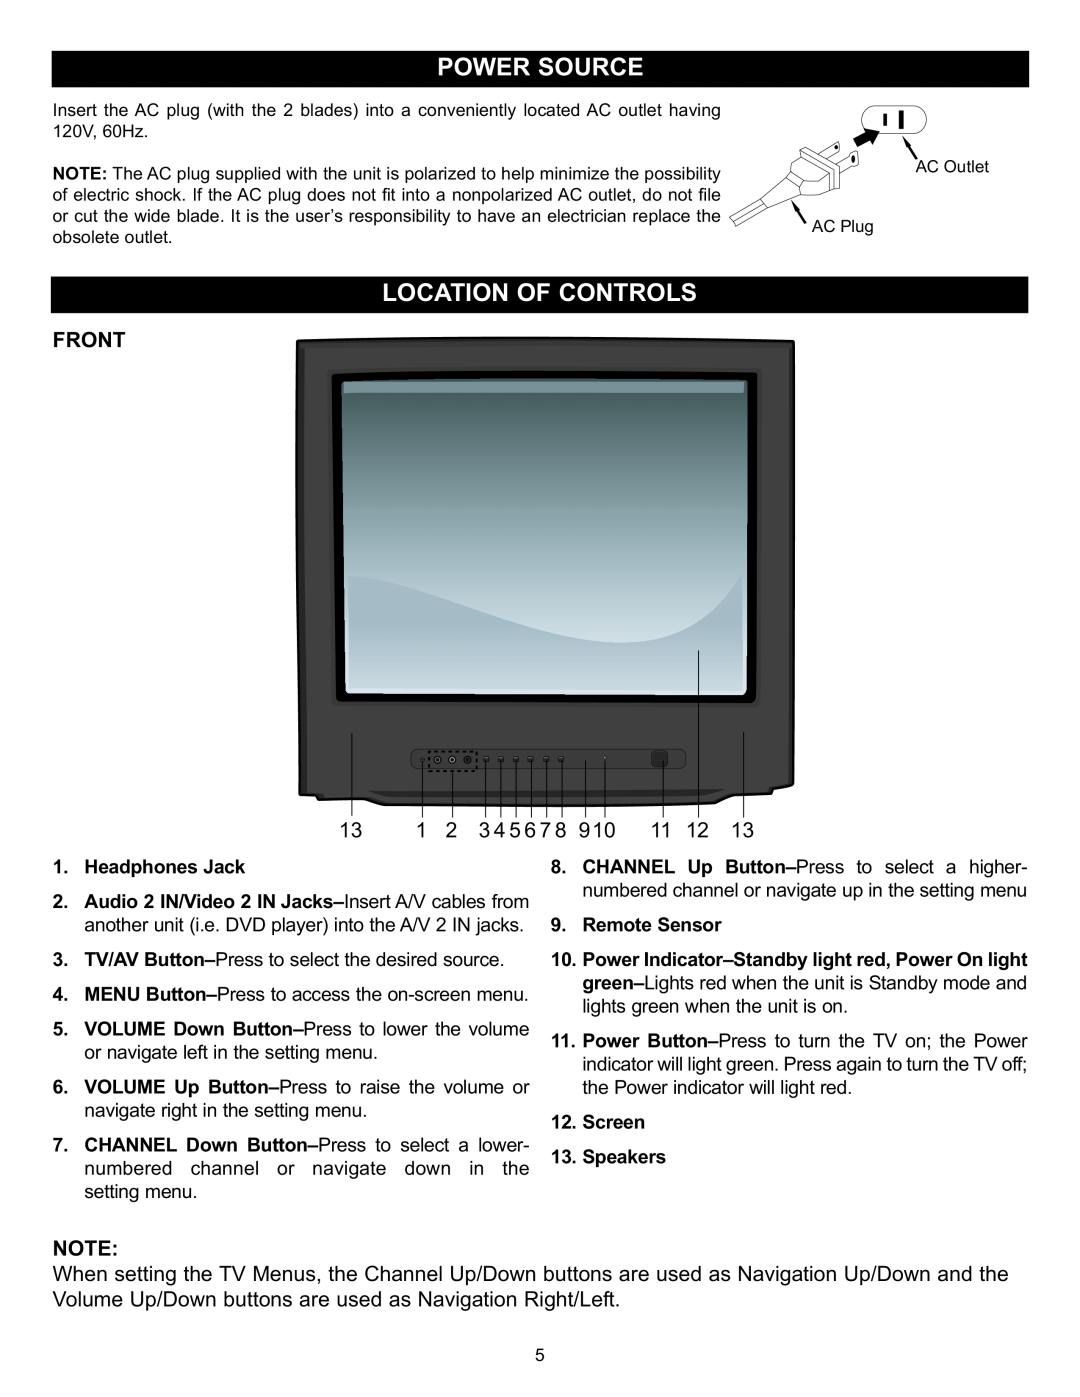 Memorex MT2028D-BLK manual Front, 3 4 5 6 7 8 